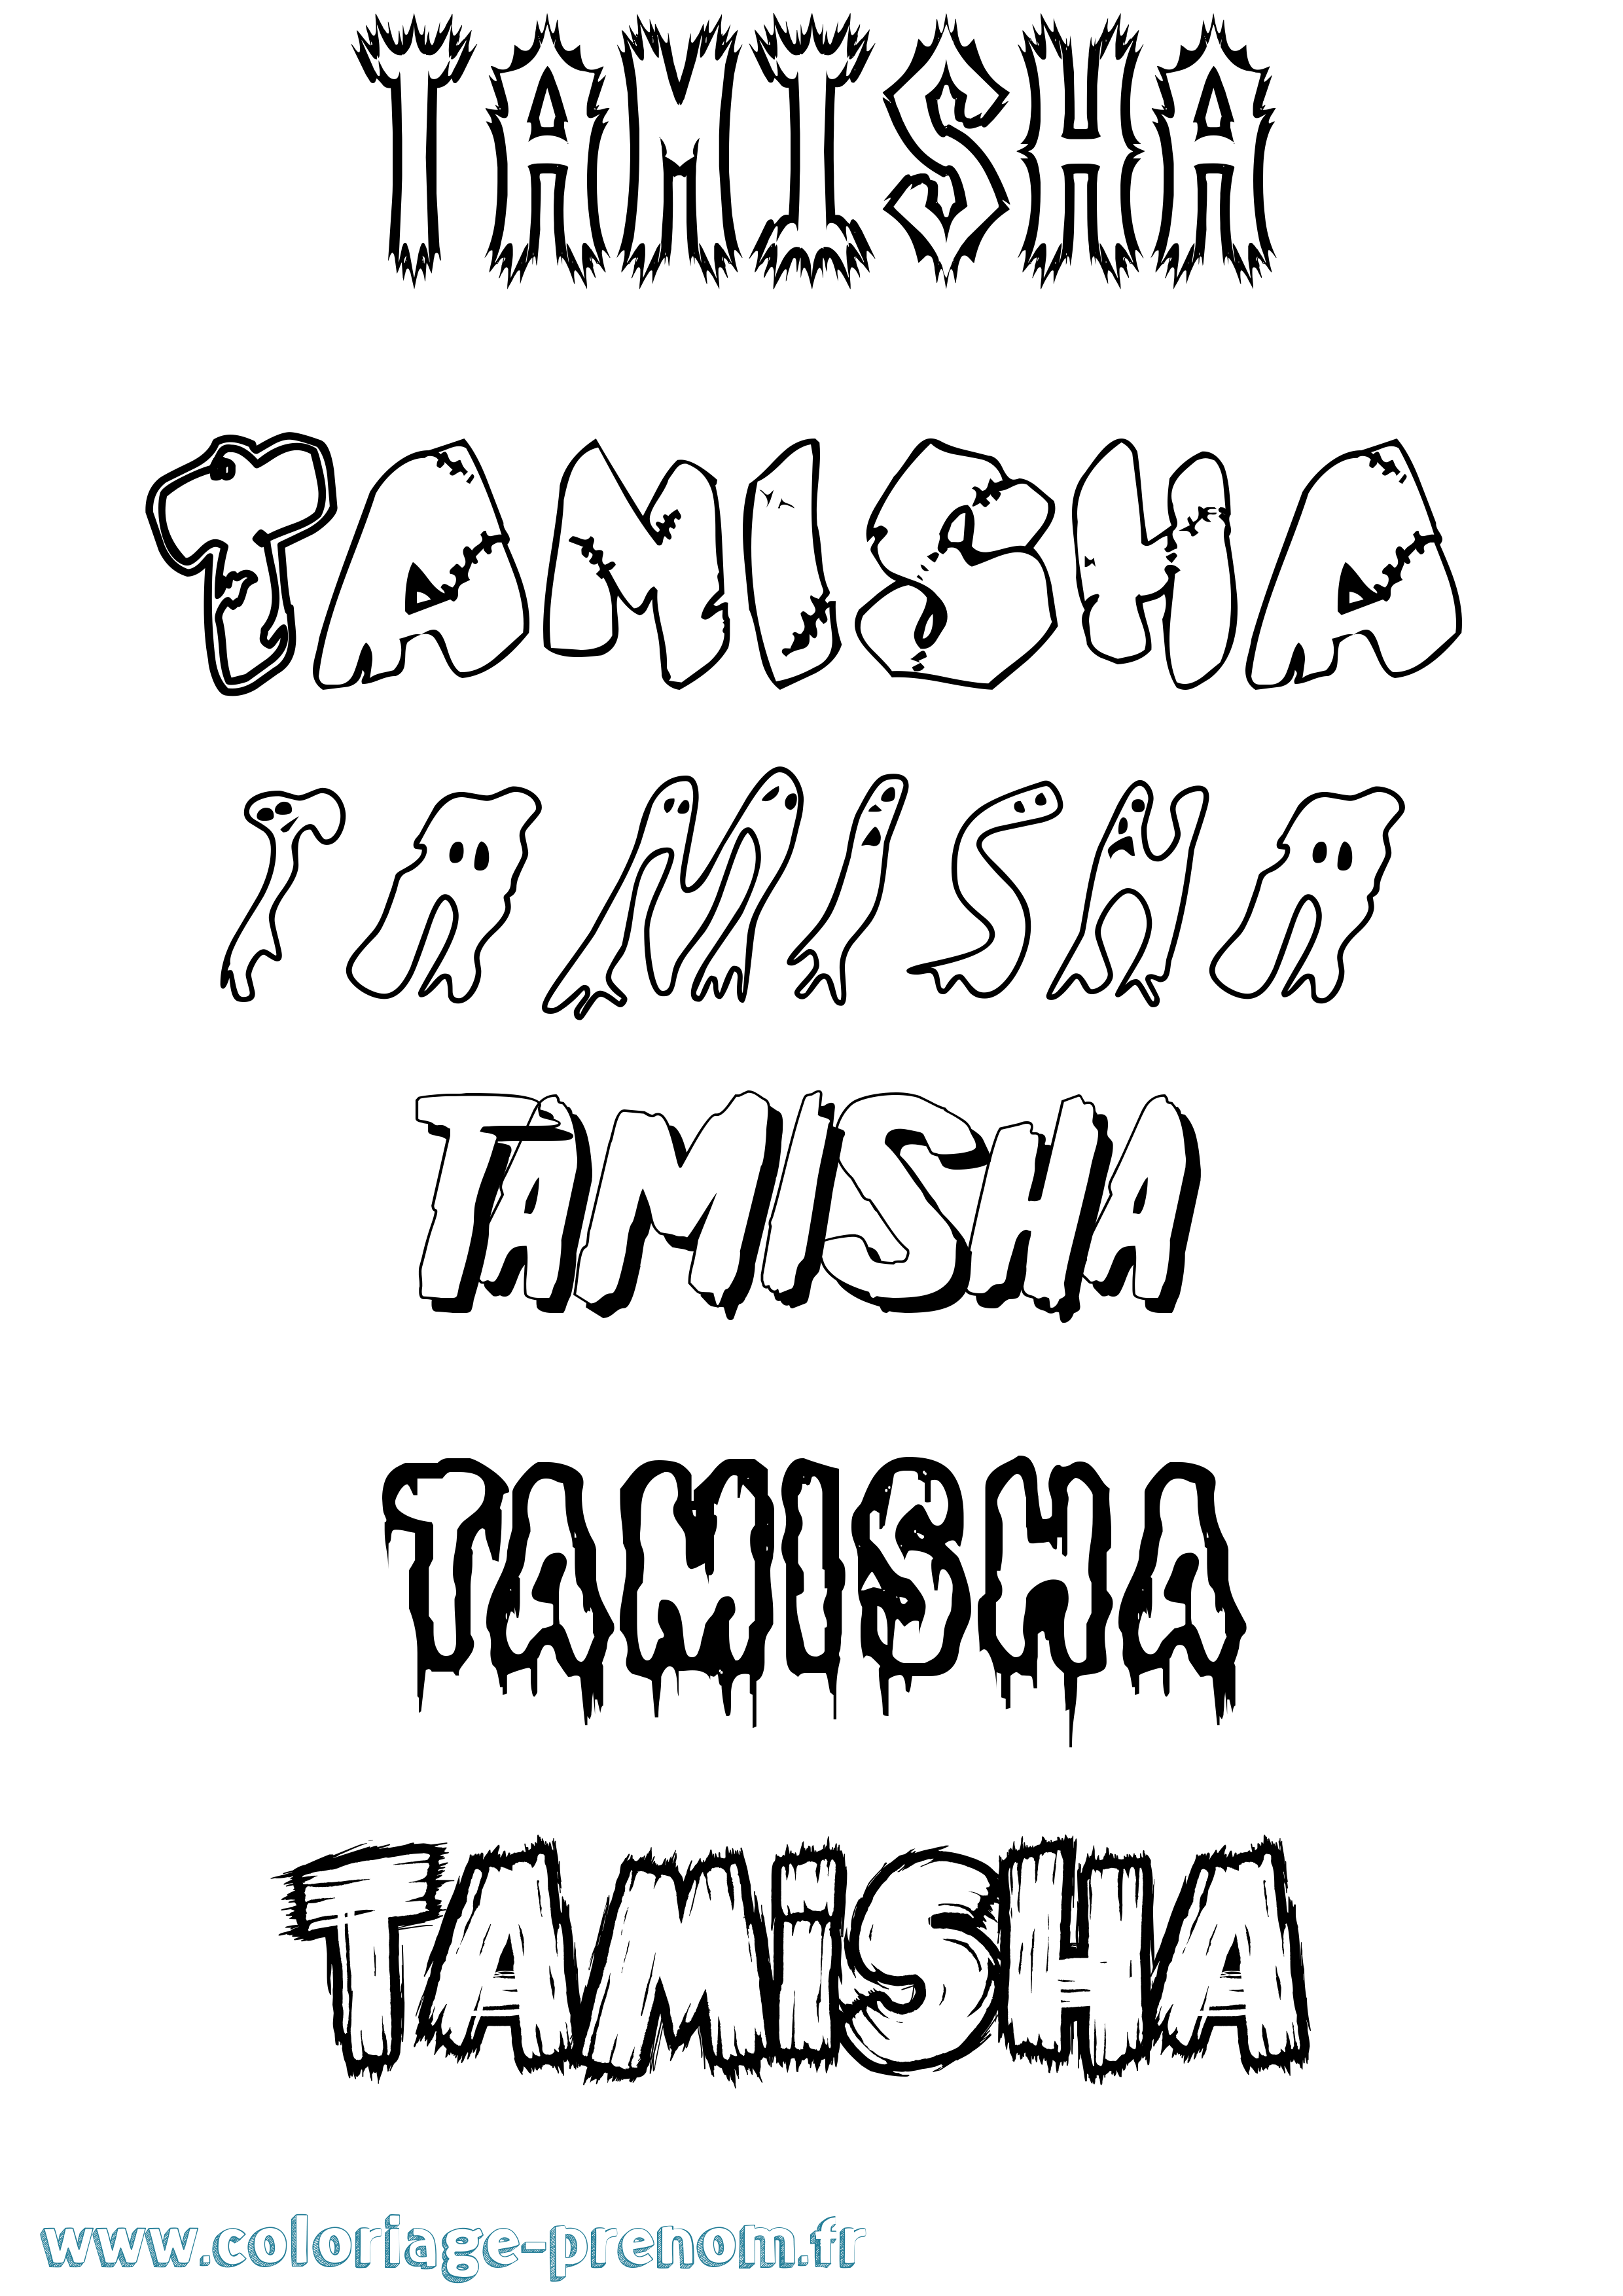 Coloriage du prénom Tamisha : à Imprimer ou Télécharger facilement